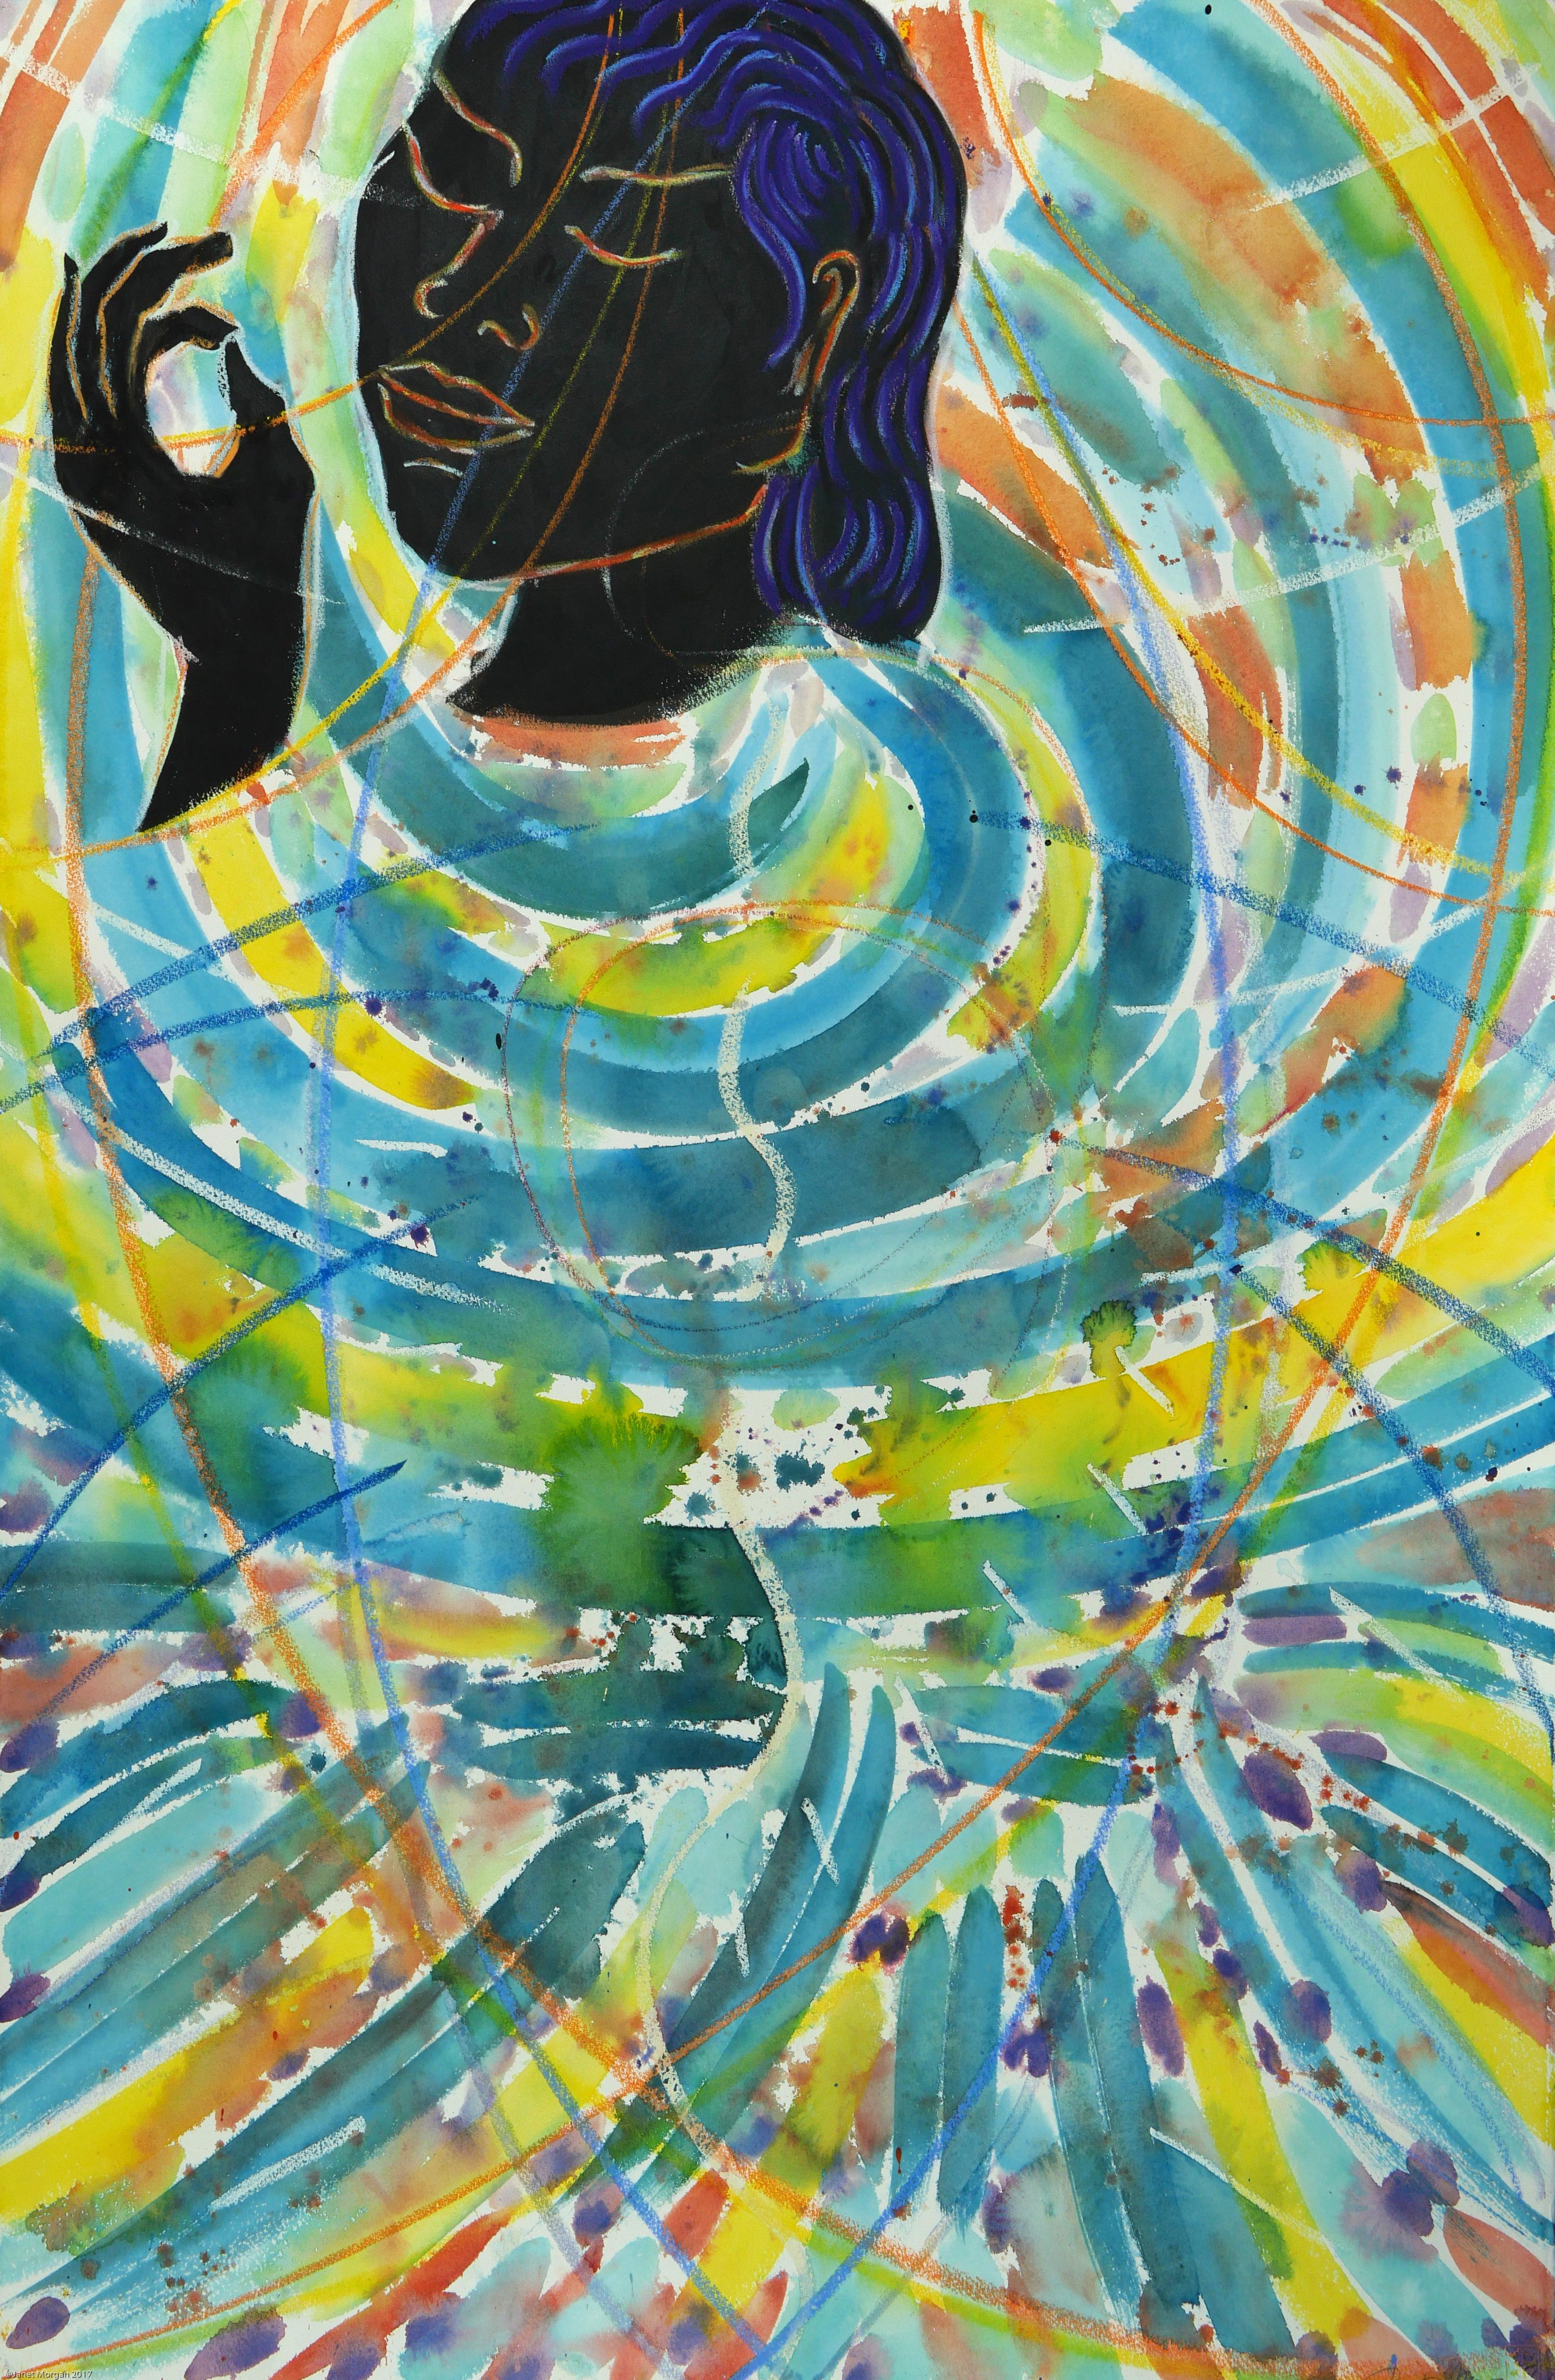 Like This (Homage to Rumi) colorful spiritual abstract goddess figure 